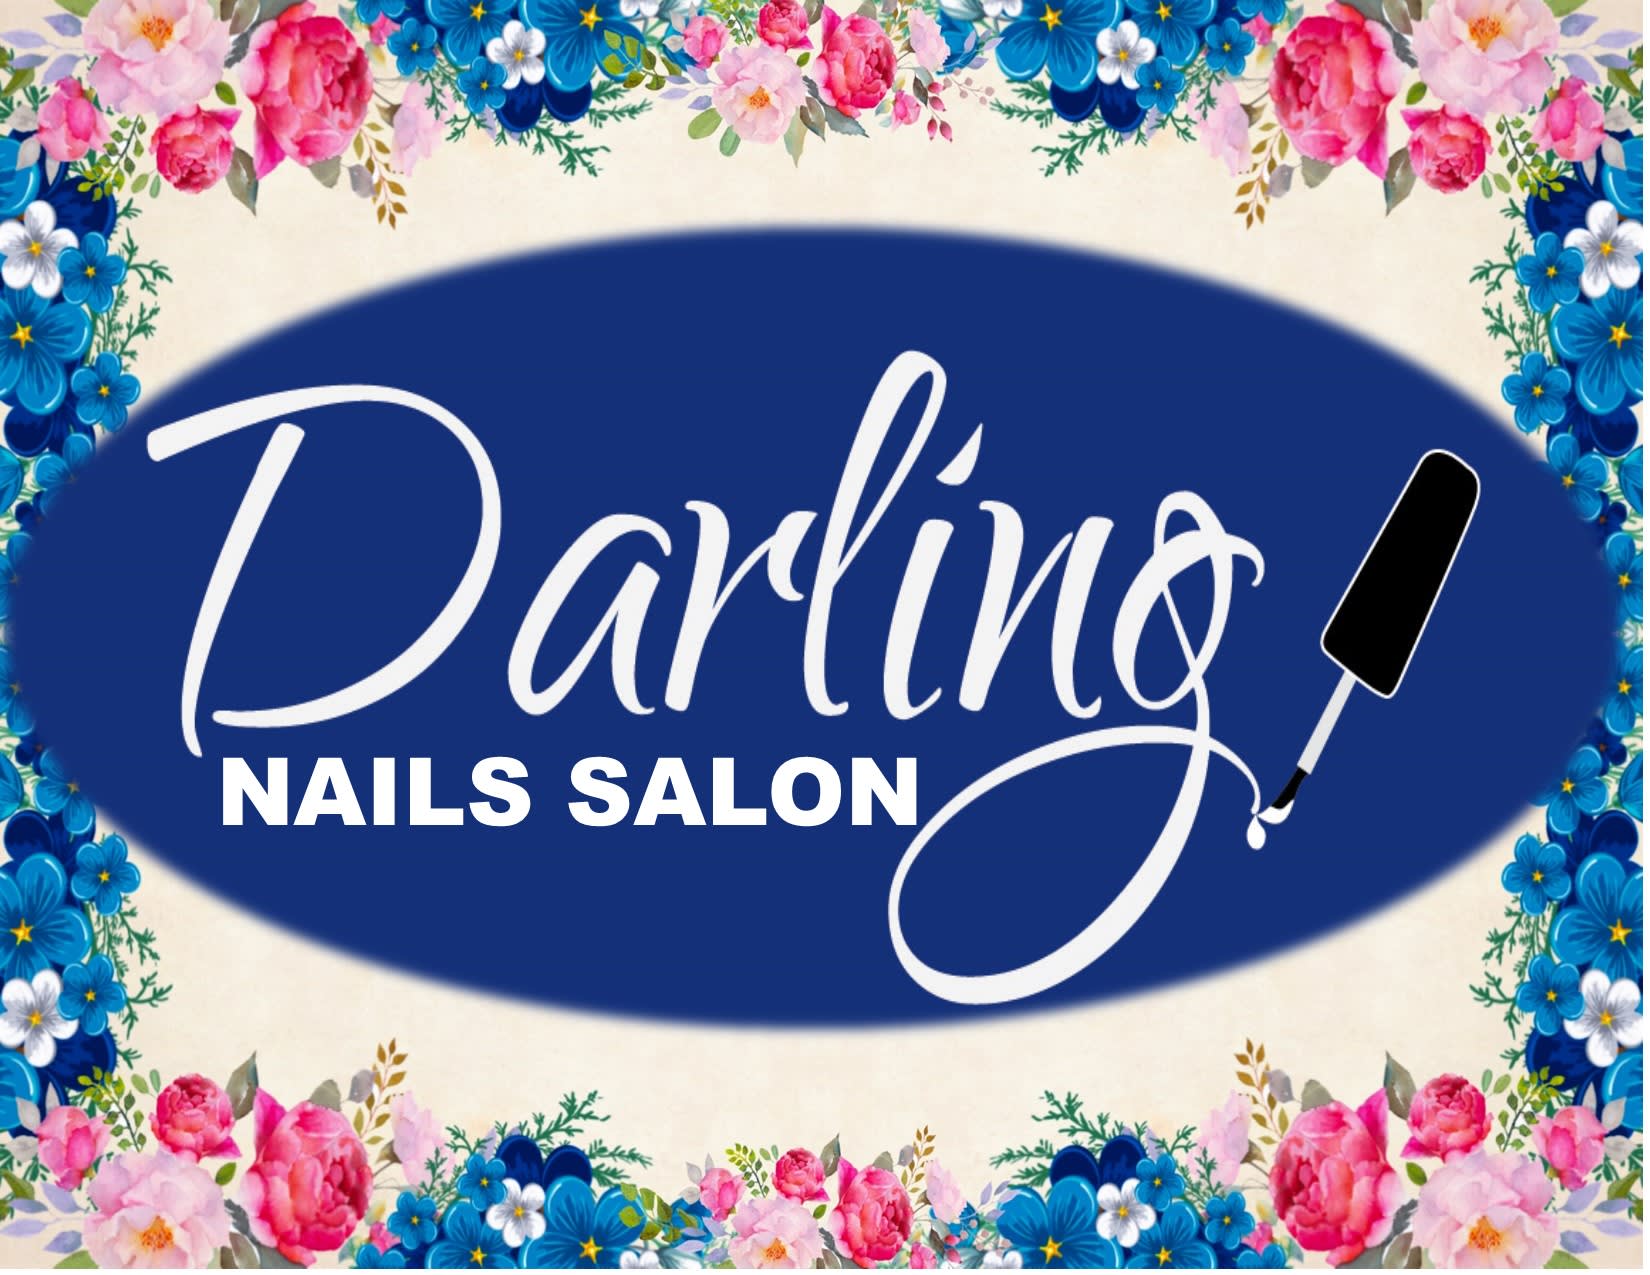 Darling Nails Salon